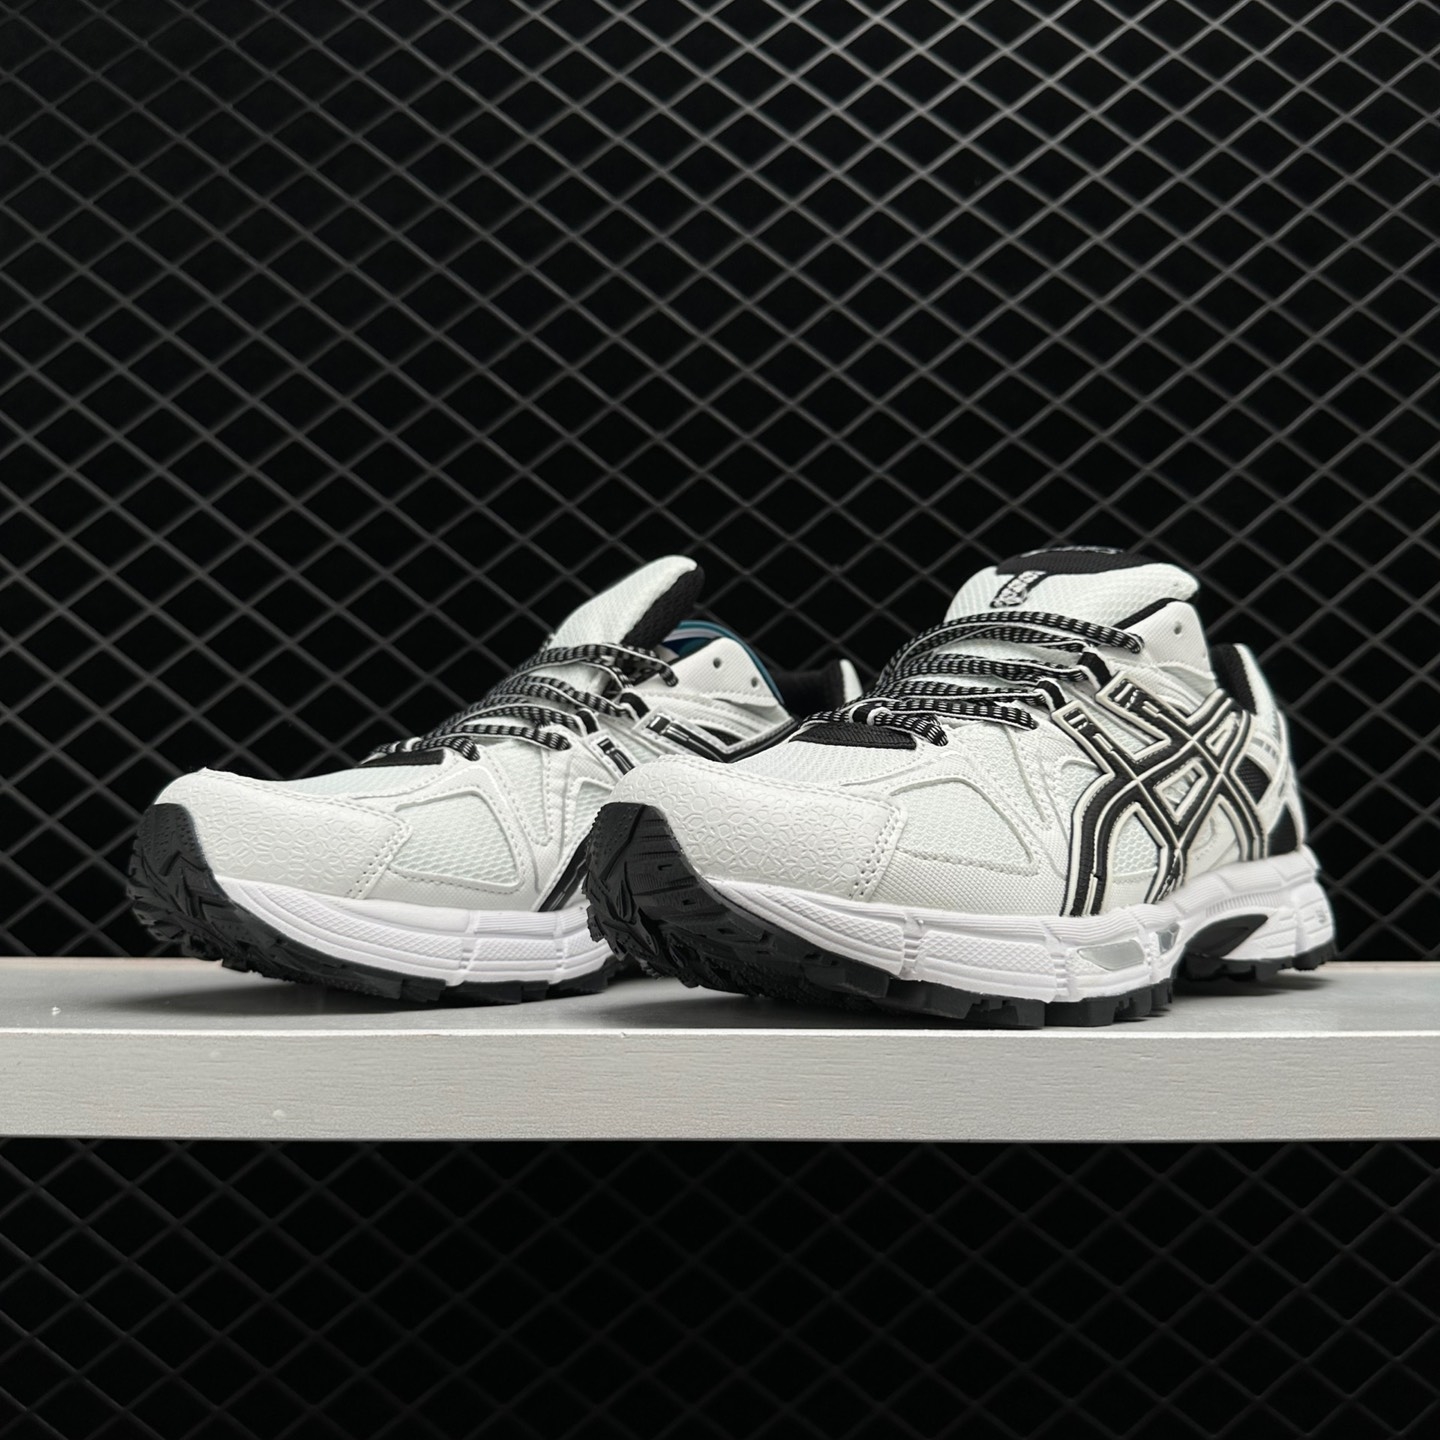 Asics Gel-Kahana 8 White Black 1011B133-100: Lightweight Trail Running Shoes